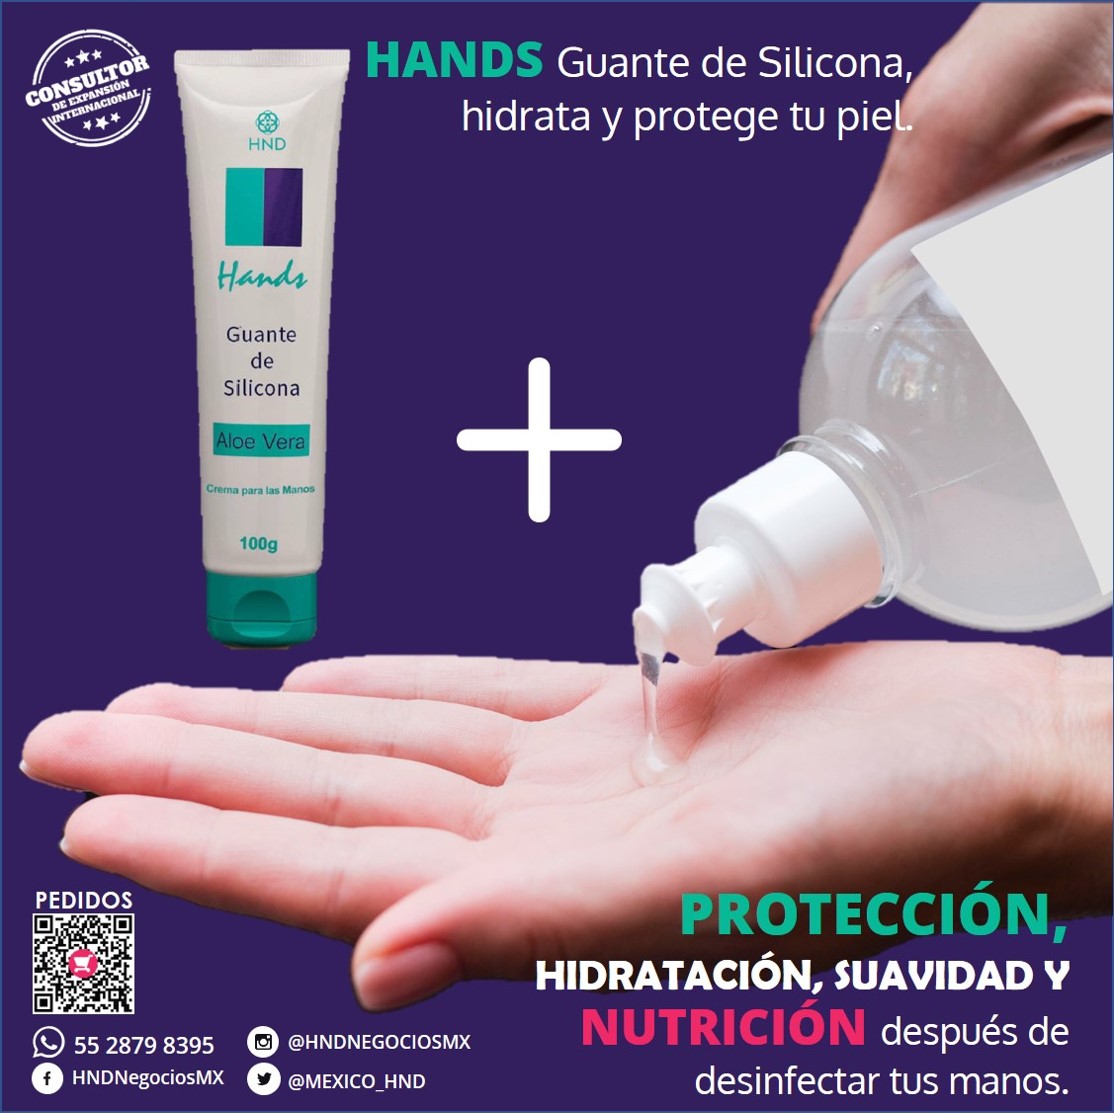 HINODE GROUP MÉXICO on Twitter: "Unas manos limpias es la mejor manera de evitar contagios. ¿Eres #Médico #Doctor #Enfermera o Profesional de la HANDS Guante de Silicona contrarresta el daño provocado